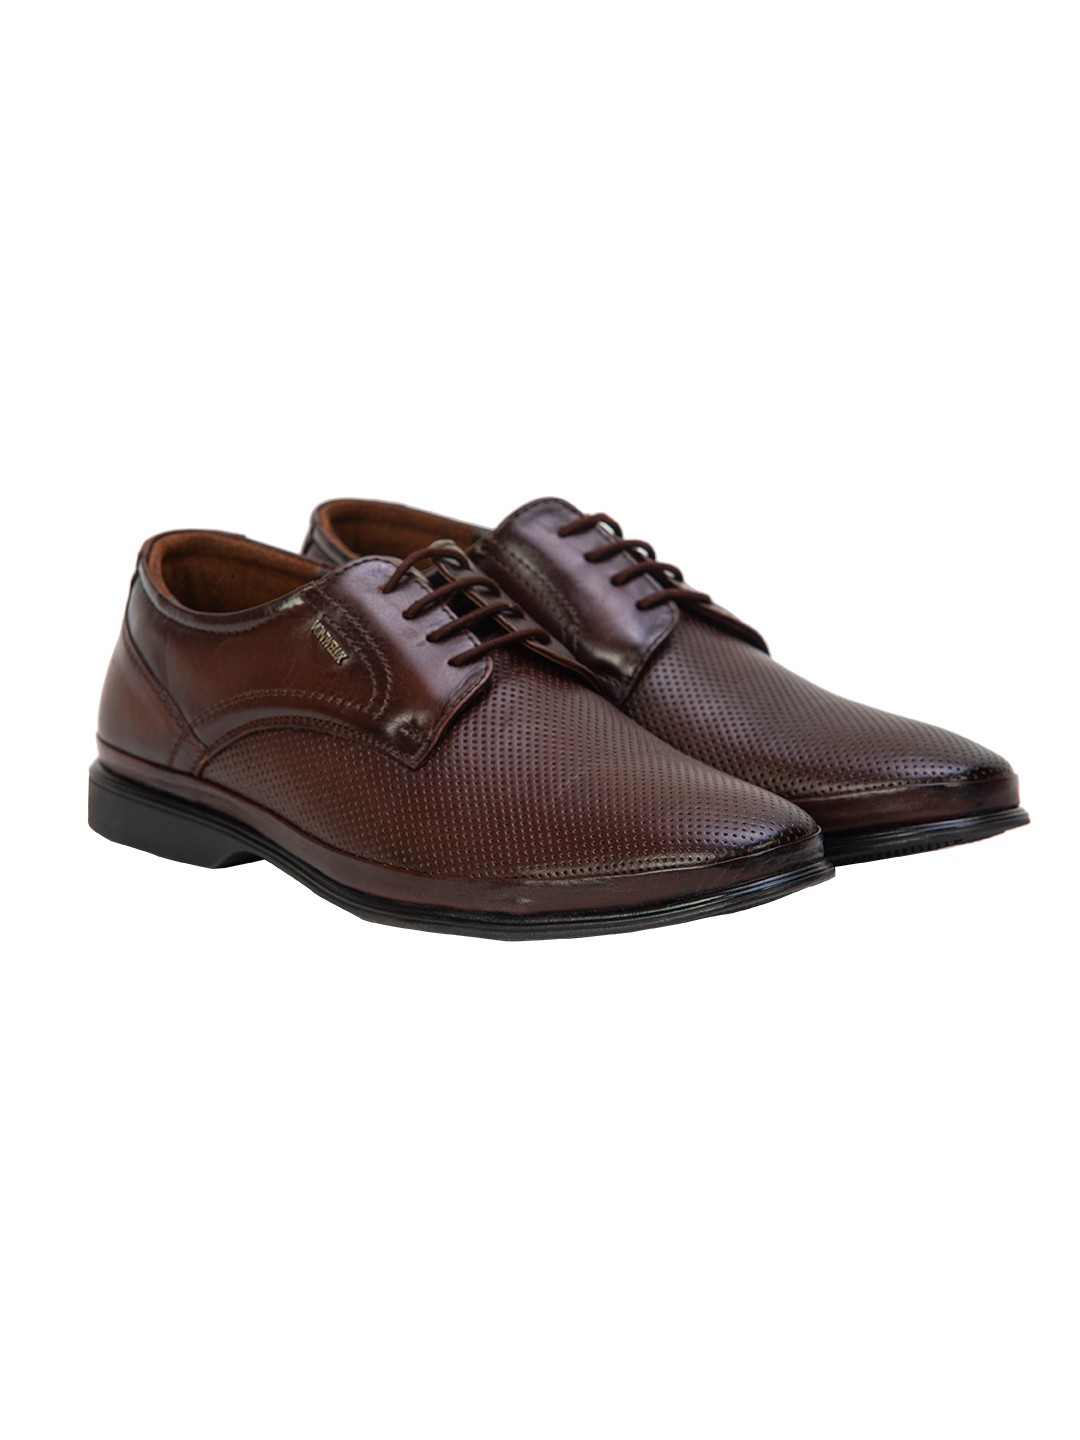 Buy Von Wellx Germany Comfort Coen Brown Shoes Online in Visakhapatnam